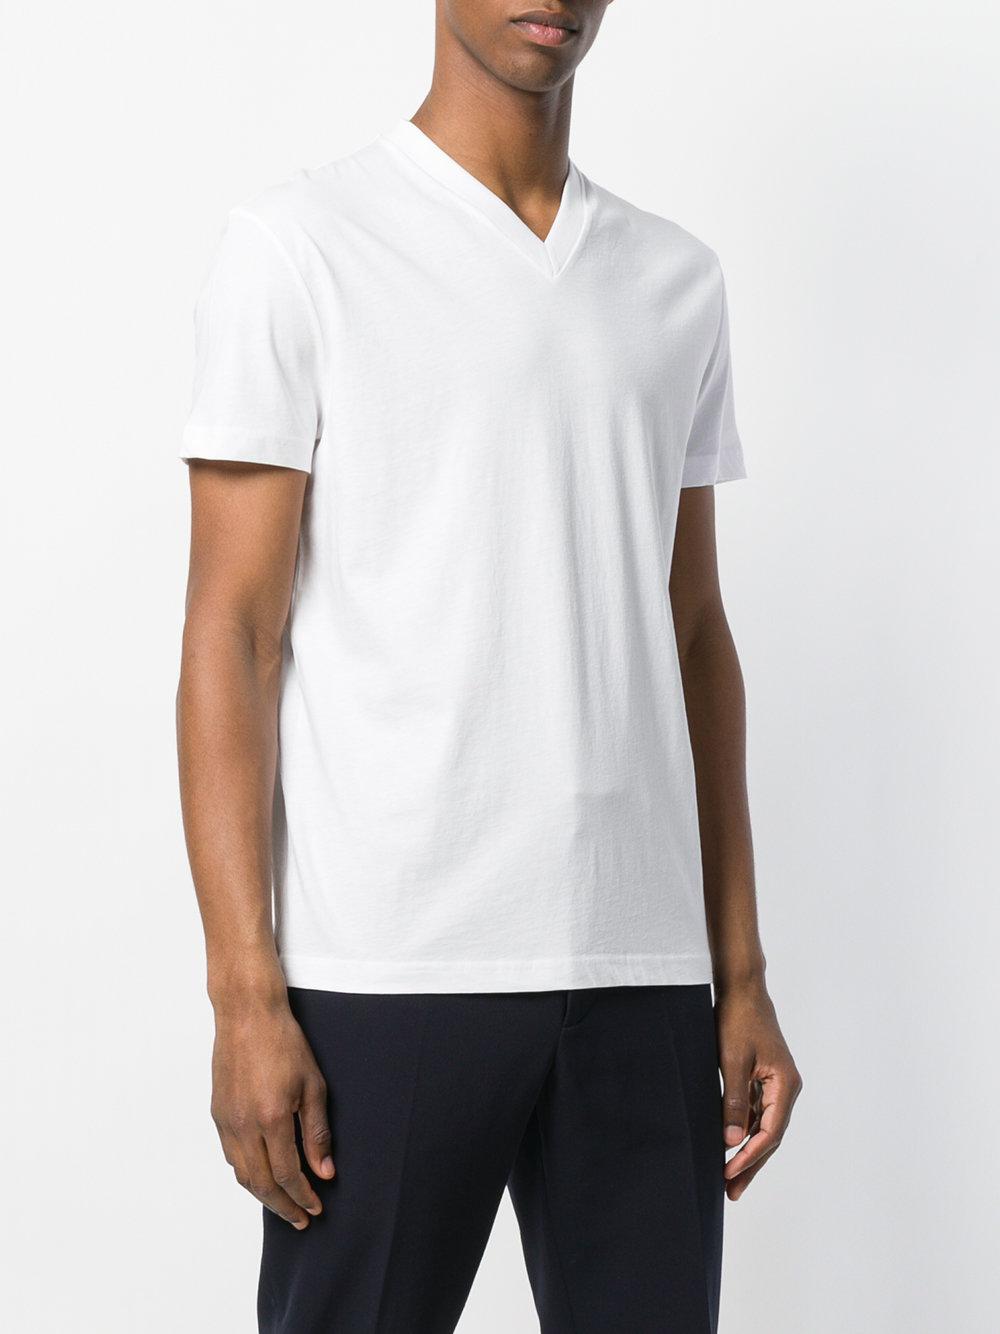 Prada Cotton V-neck T-shirt 3 Pack in White for Men - Lyst